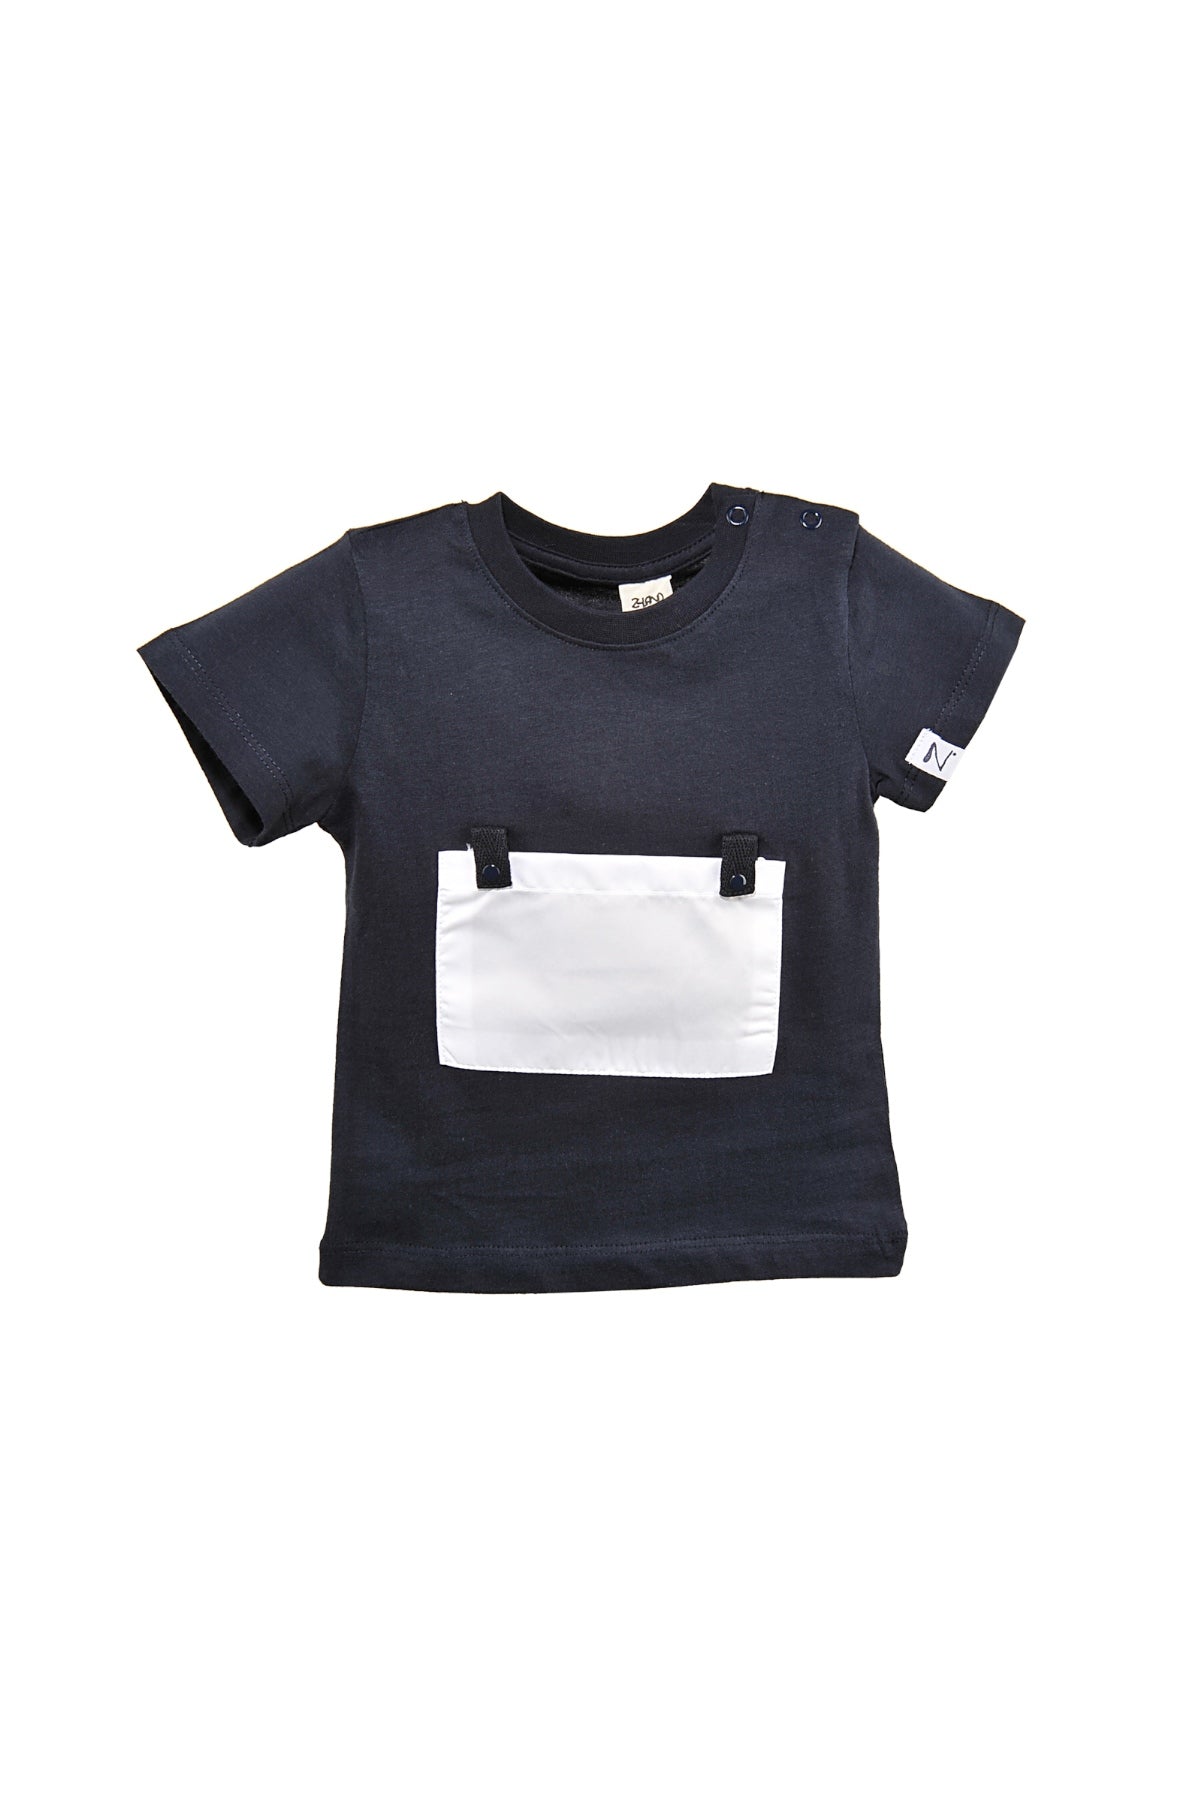 Erkek Bebek Yaka Çıtçıtlı Beyaz Cepli Lacivert T-Shirt (9ay-4yaş)-3